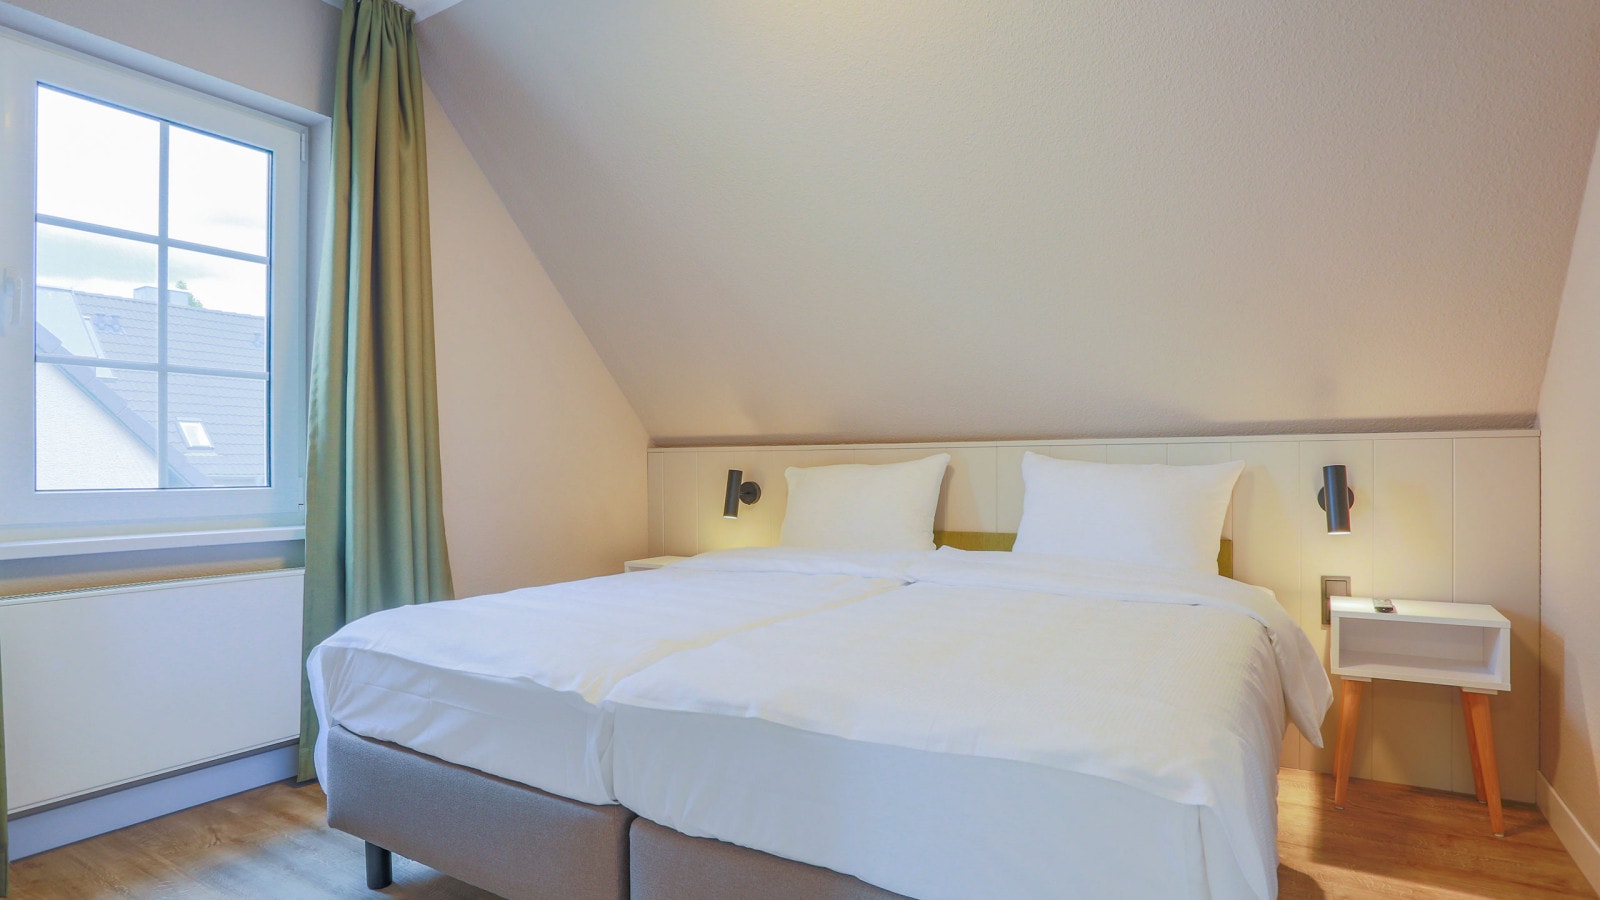 Gemütliches Doppelbett in einem Schlafzimmer mit großen Fenstern